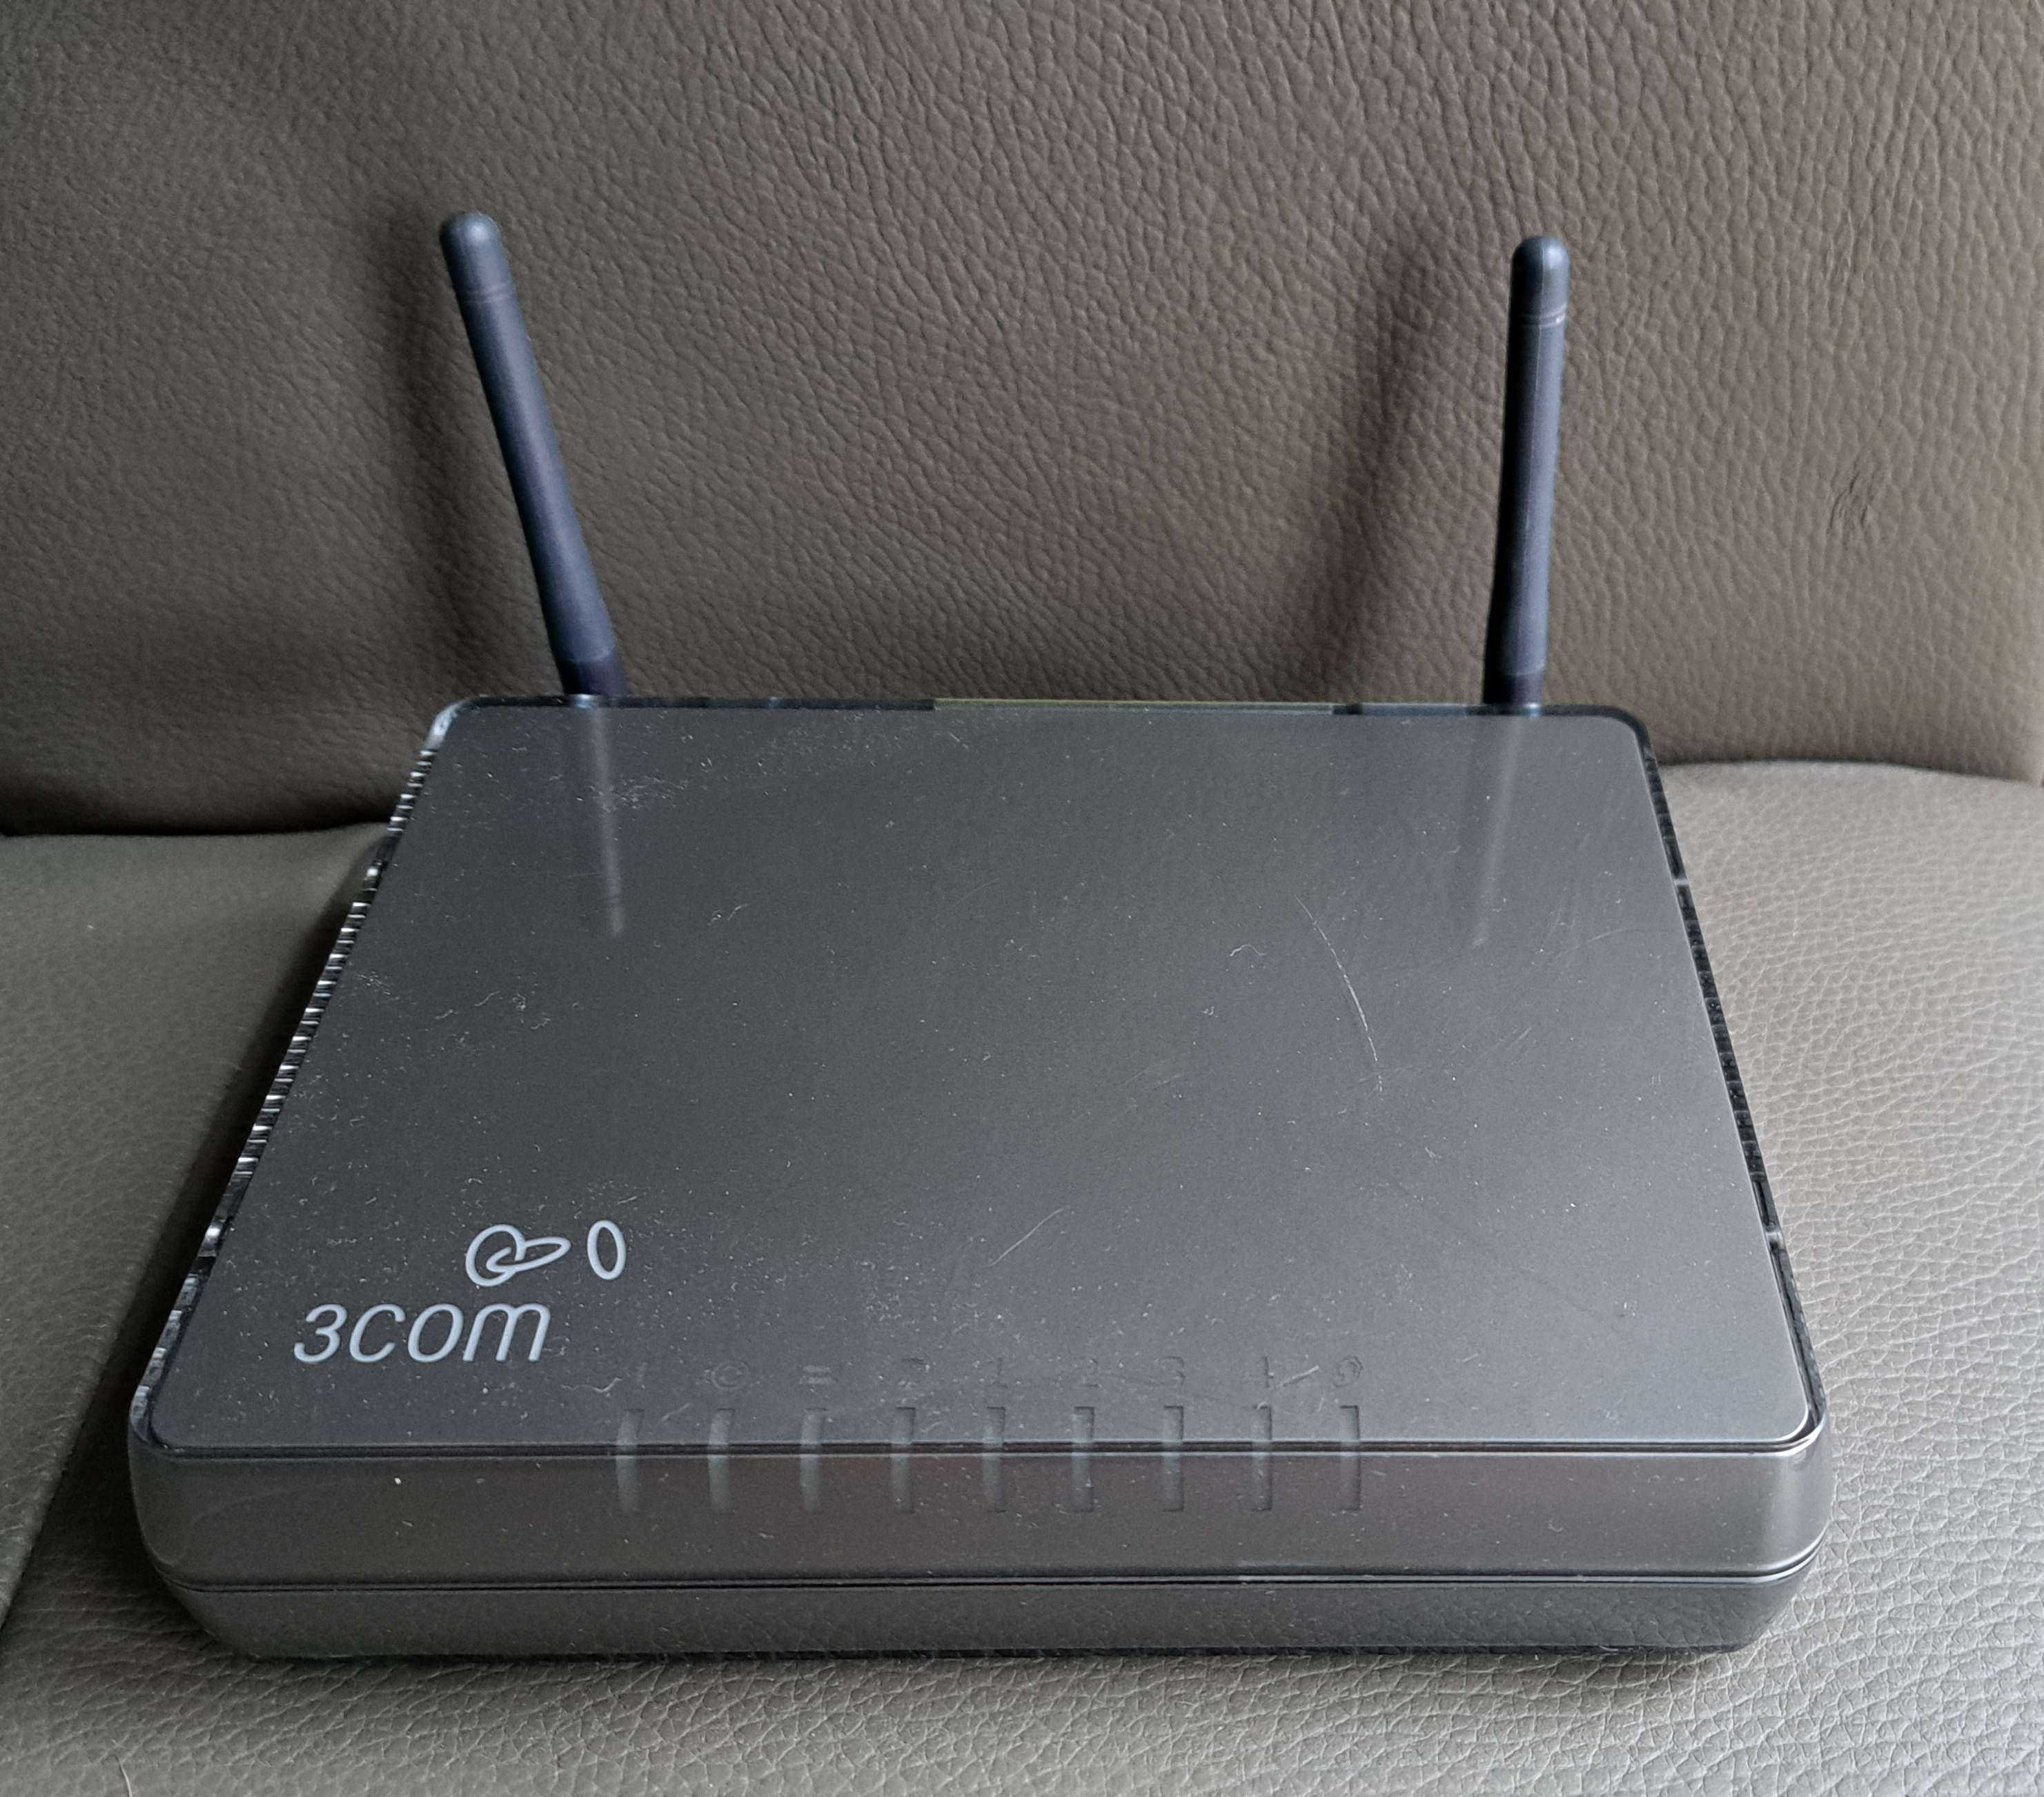 Router 3com DSL do kablówek UPC Vektra itp Podświetlane logo "3com"